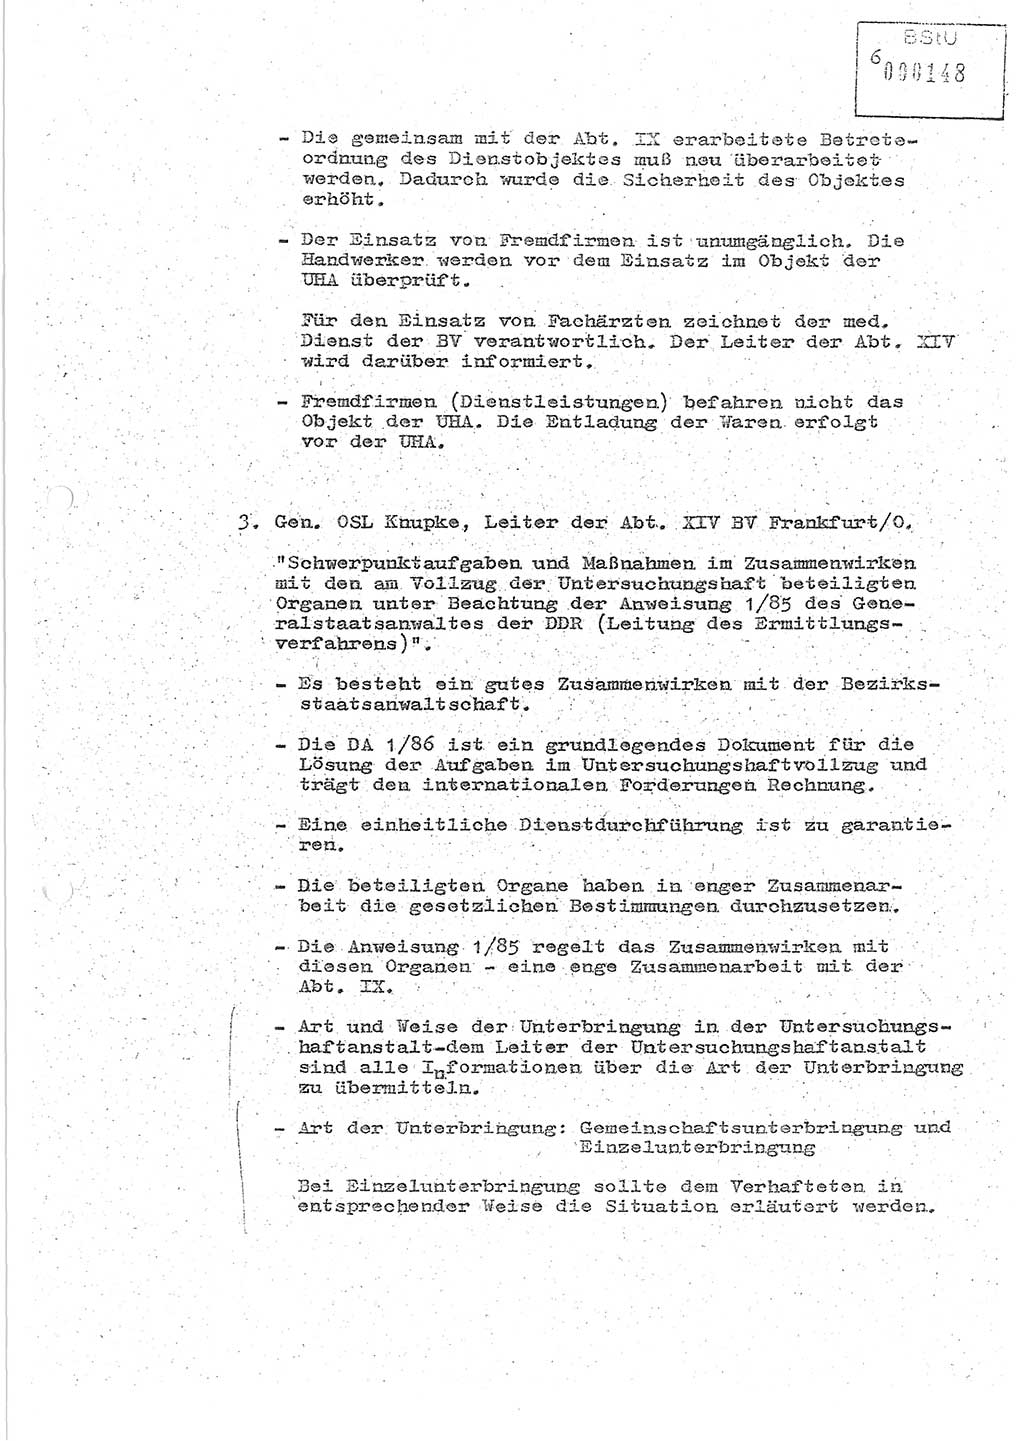 Protokoll zur zentralen Dienstkonferenz der Linie (Abteilung) ⅩⅣ des MfS [Ministerium für Staatssicherheit, Deutsche Demokratische Republik (DDR)] am 5.3./6.3.1986 in der Abteilung (Abt.) XIV des MfS Berlin, Abteilung XIV, Berlin 5.3./6.3.1986, Seite 6 (Prot. Di.-Konf. Abt. ⅩⅣ MfS DDR Bln. 1986, S. 6)